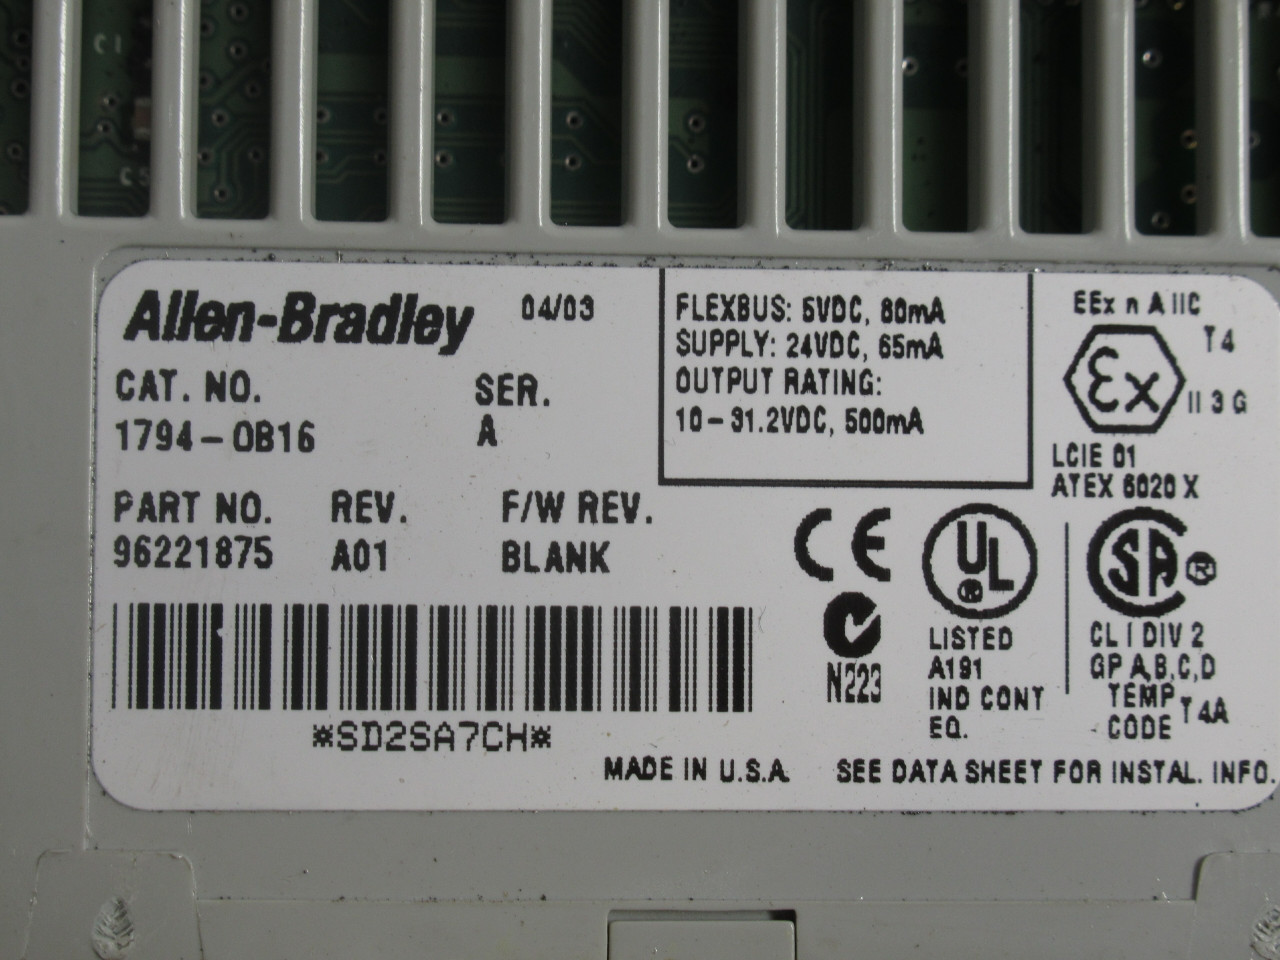 Allen-Bradley 1794-OB16 Ser A Flex I/O 24VDC Output 96221875 Rev A01 USED